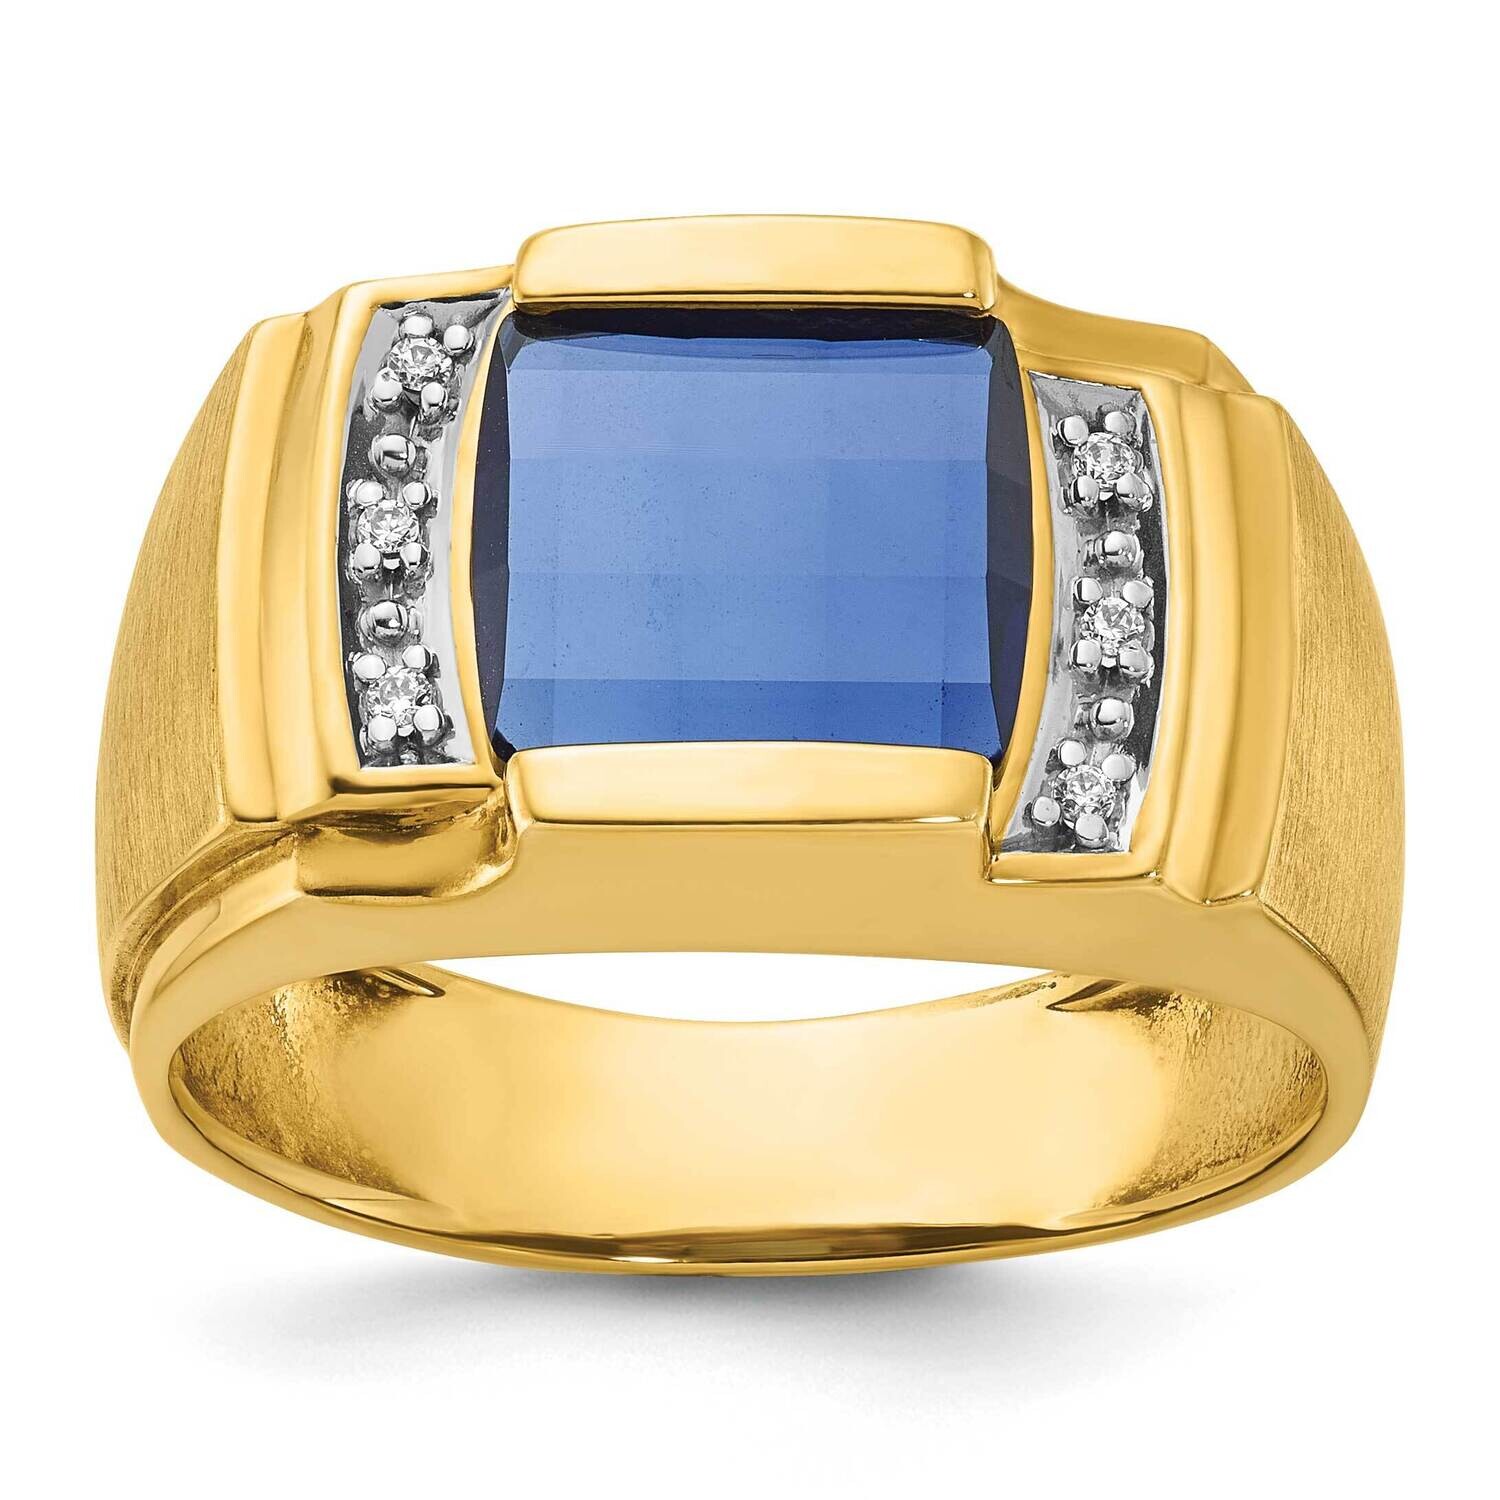 Ibgoodman Men's Gemstone Diamond Ring Mounting 14k Gold B57702-4Y